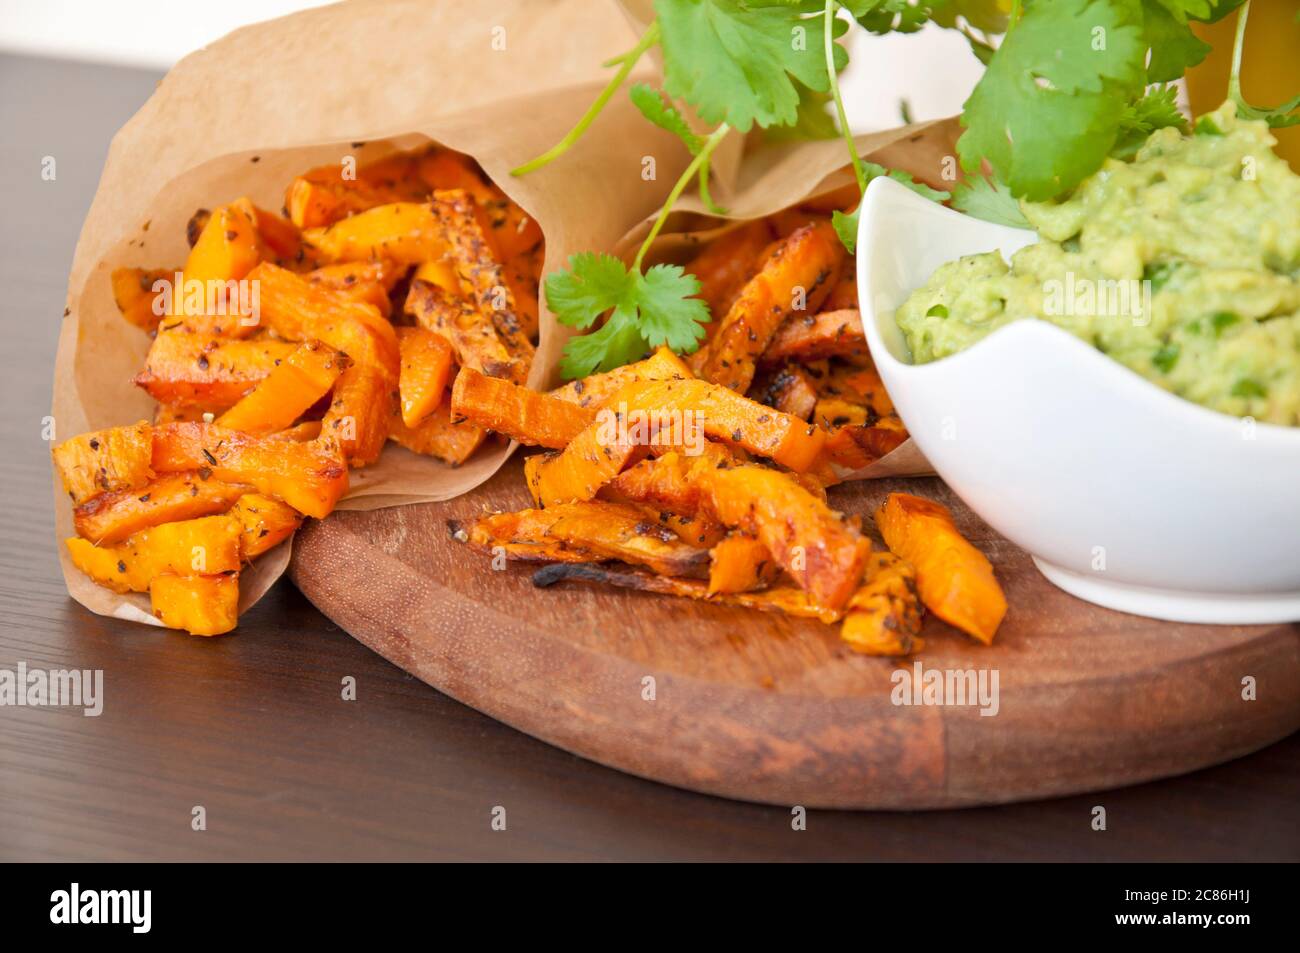 Süßkartoffeln mit Guacamole Dip verziert mit frischem Koriander Stockfoto